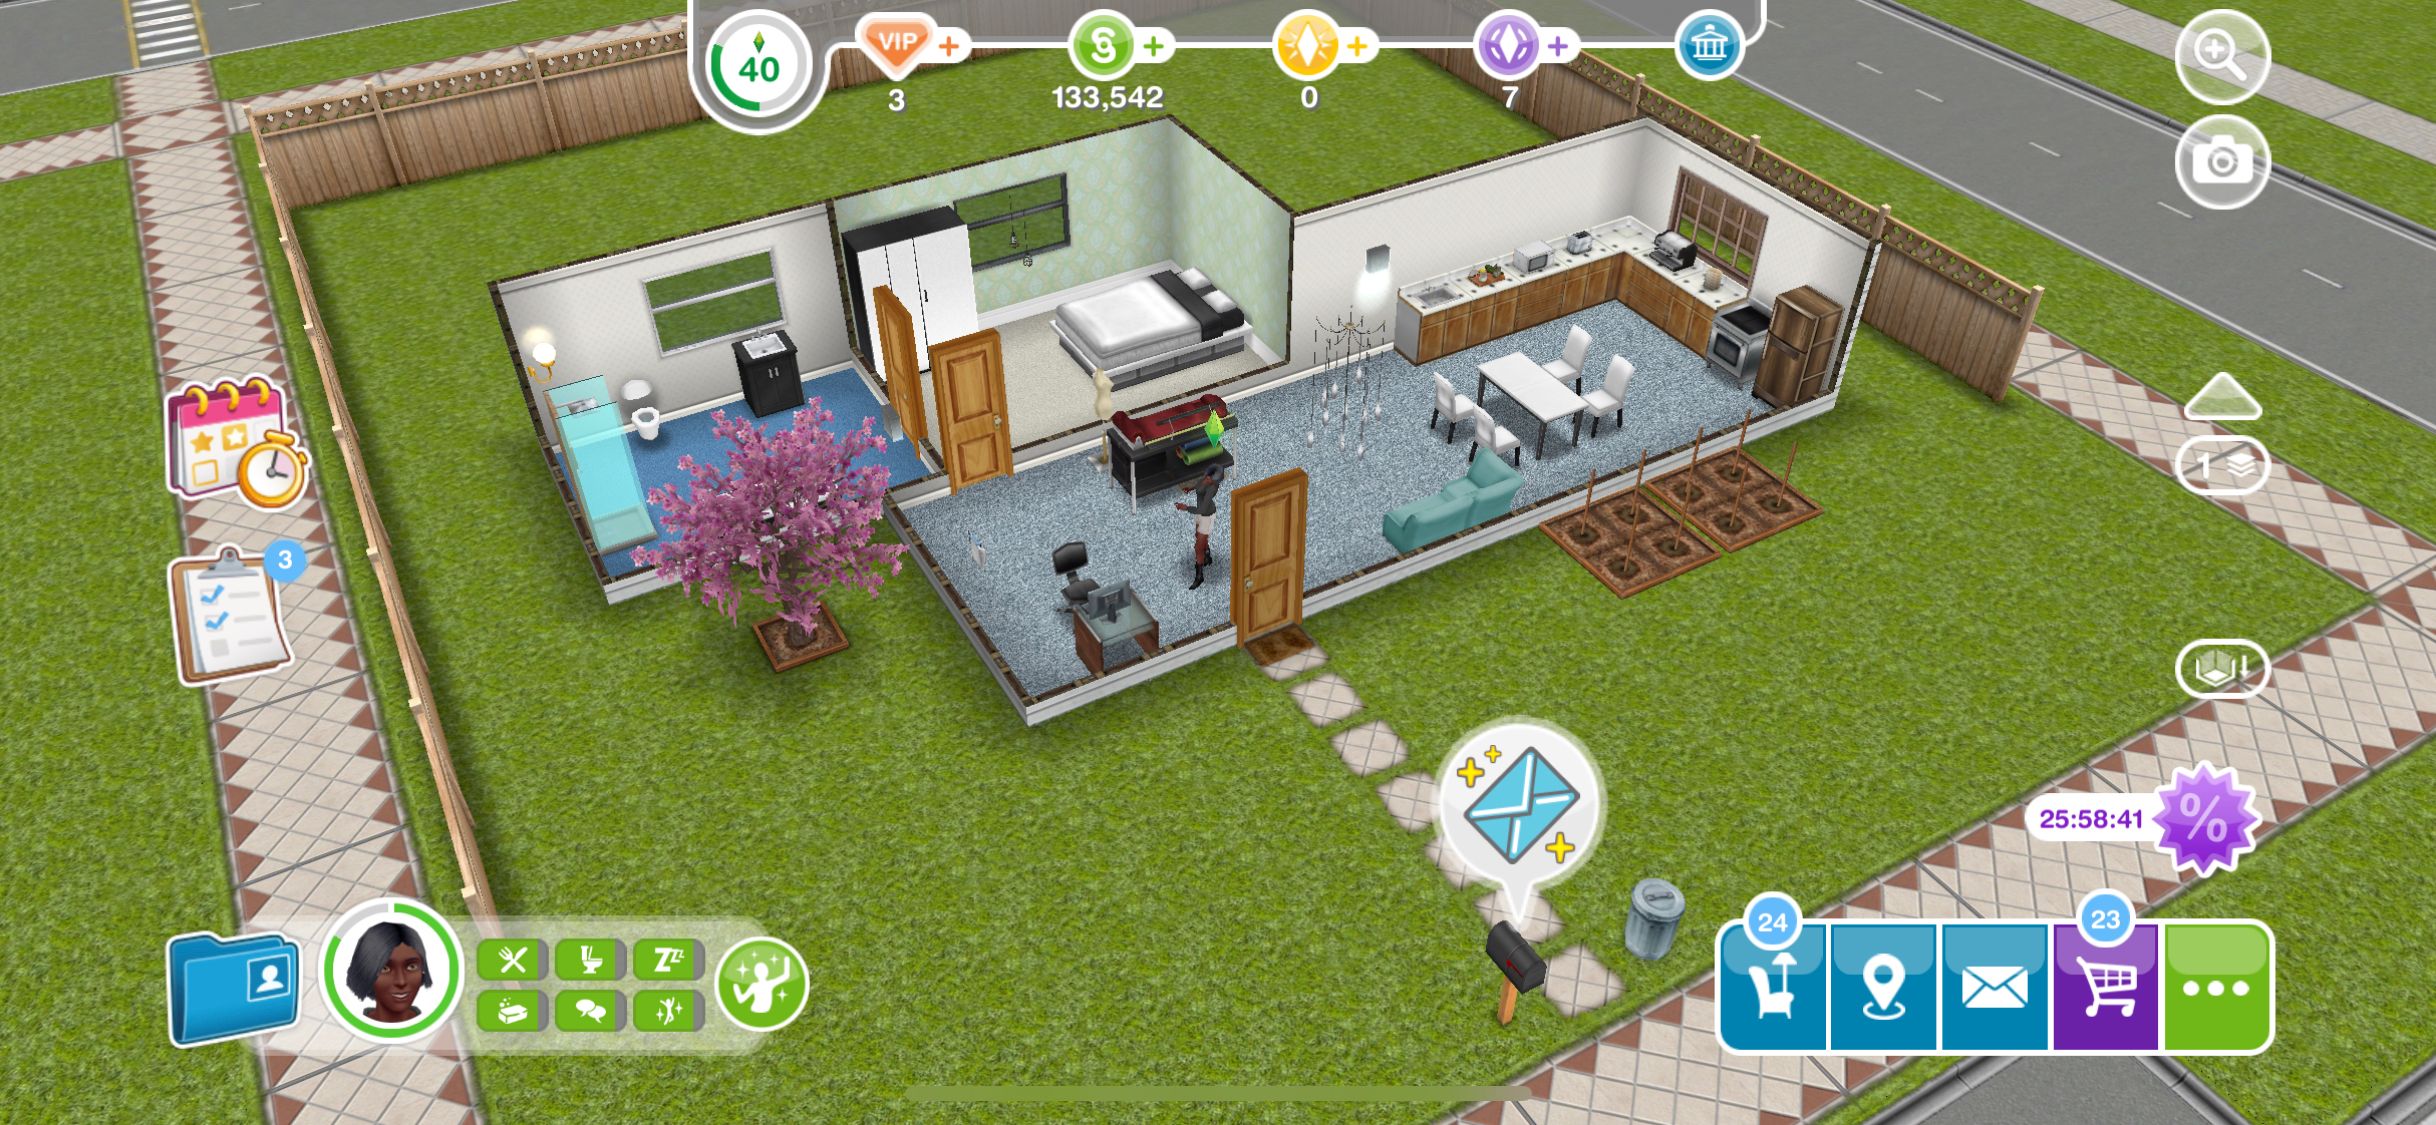 The Sims FreePlay - ảnh chụp màn hình ngôi nhà